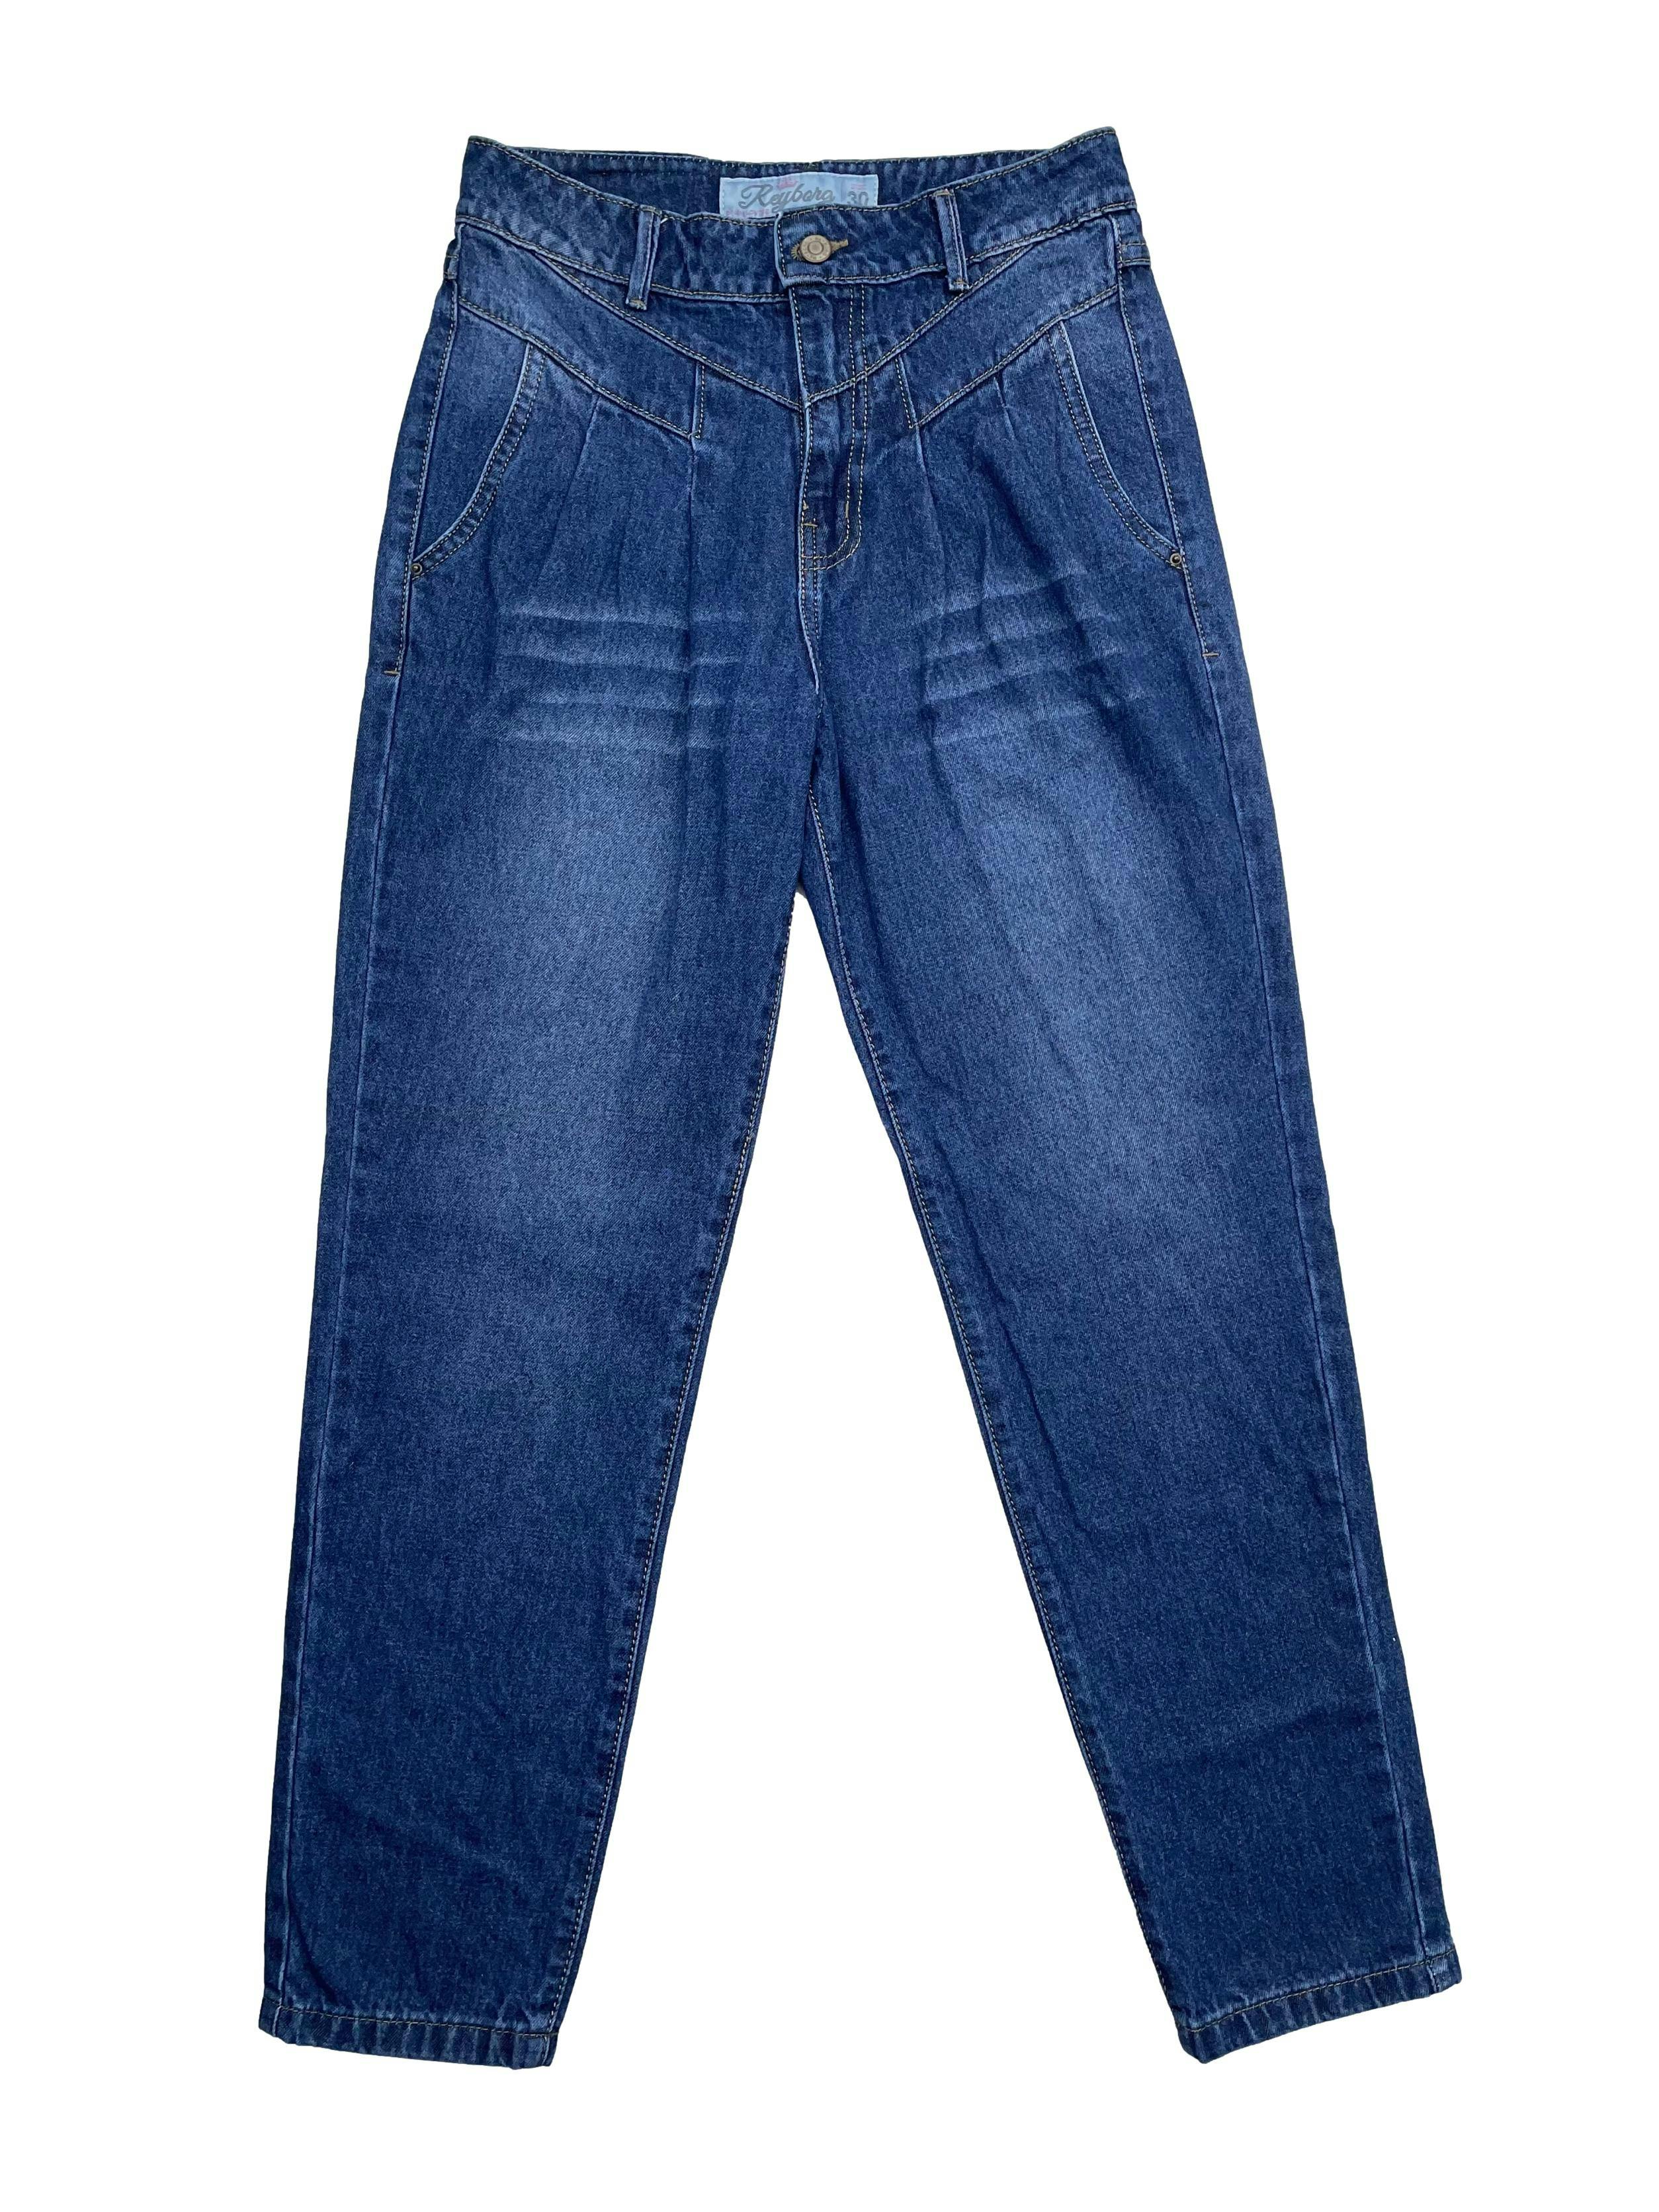 Pantalón mom jean de tiro alto con cortes asentadores en cintura, costuras en contraste, 4 bolsillos. Cintura 70cm, Largo 96cm.